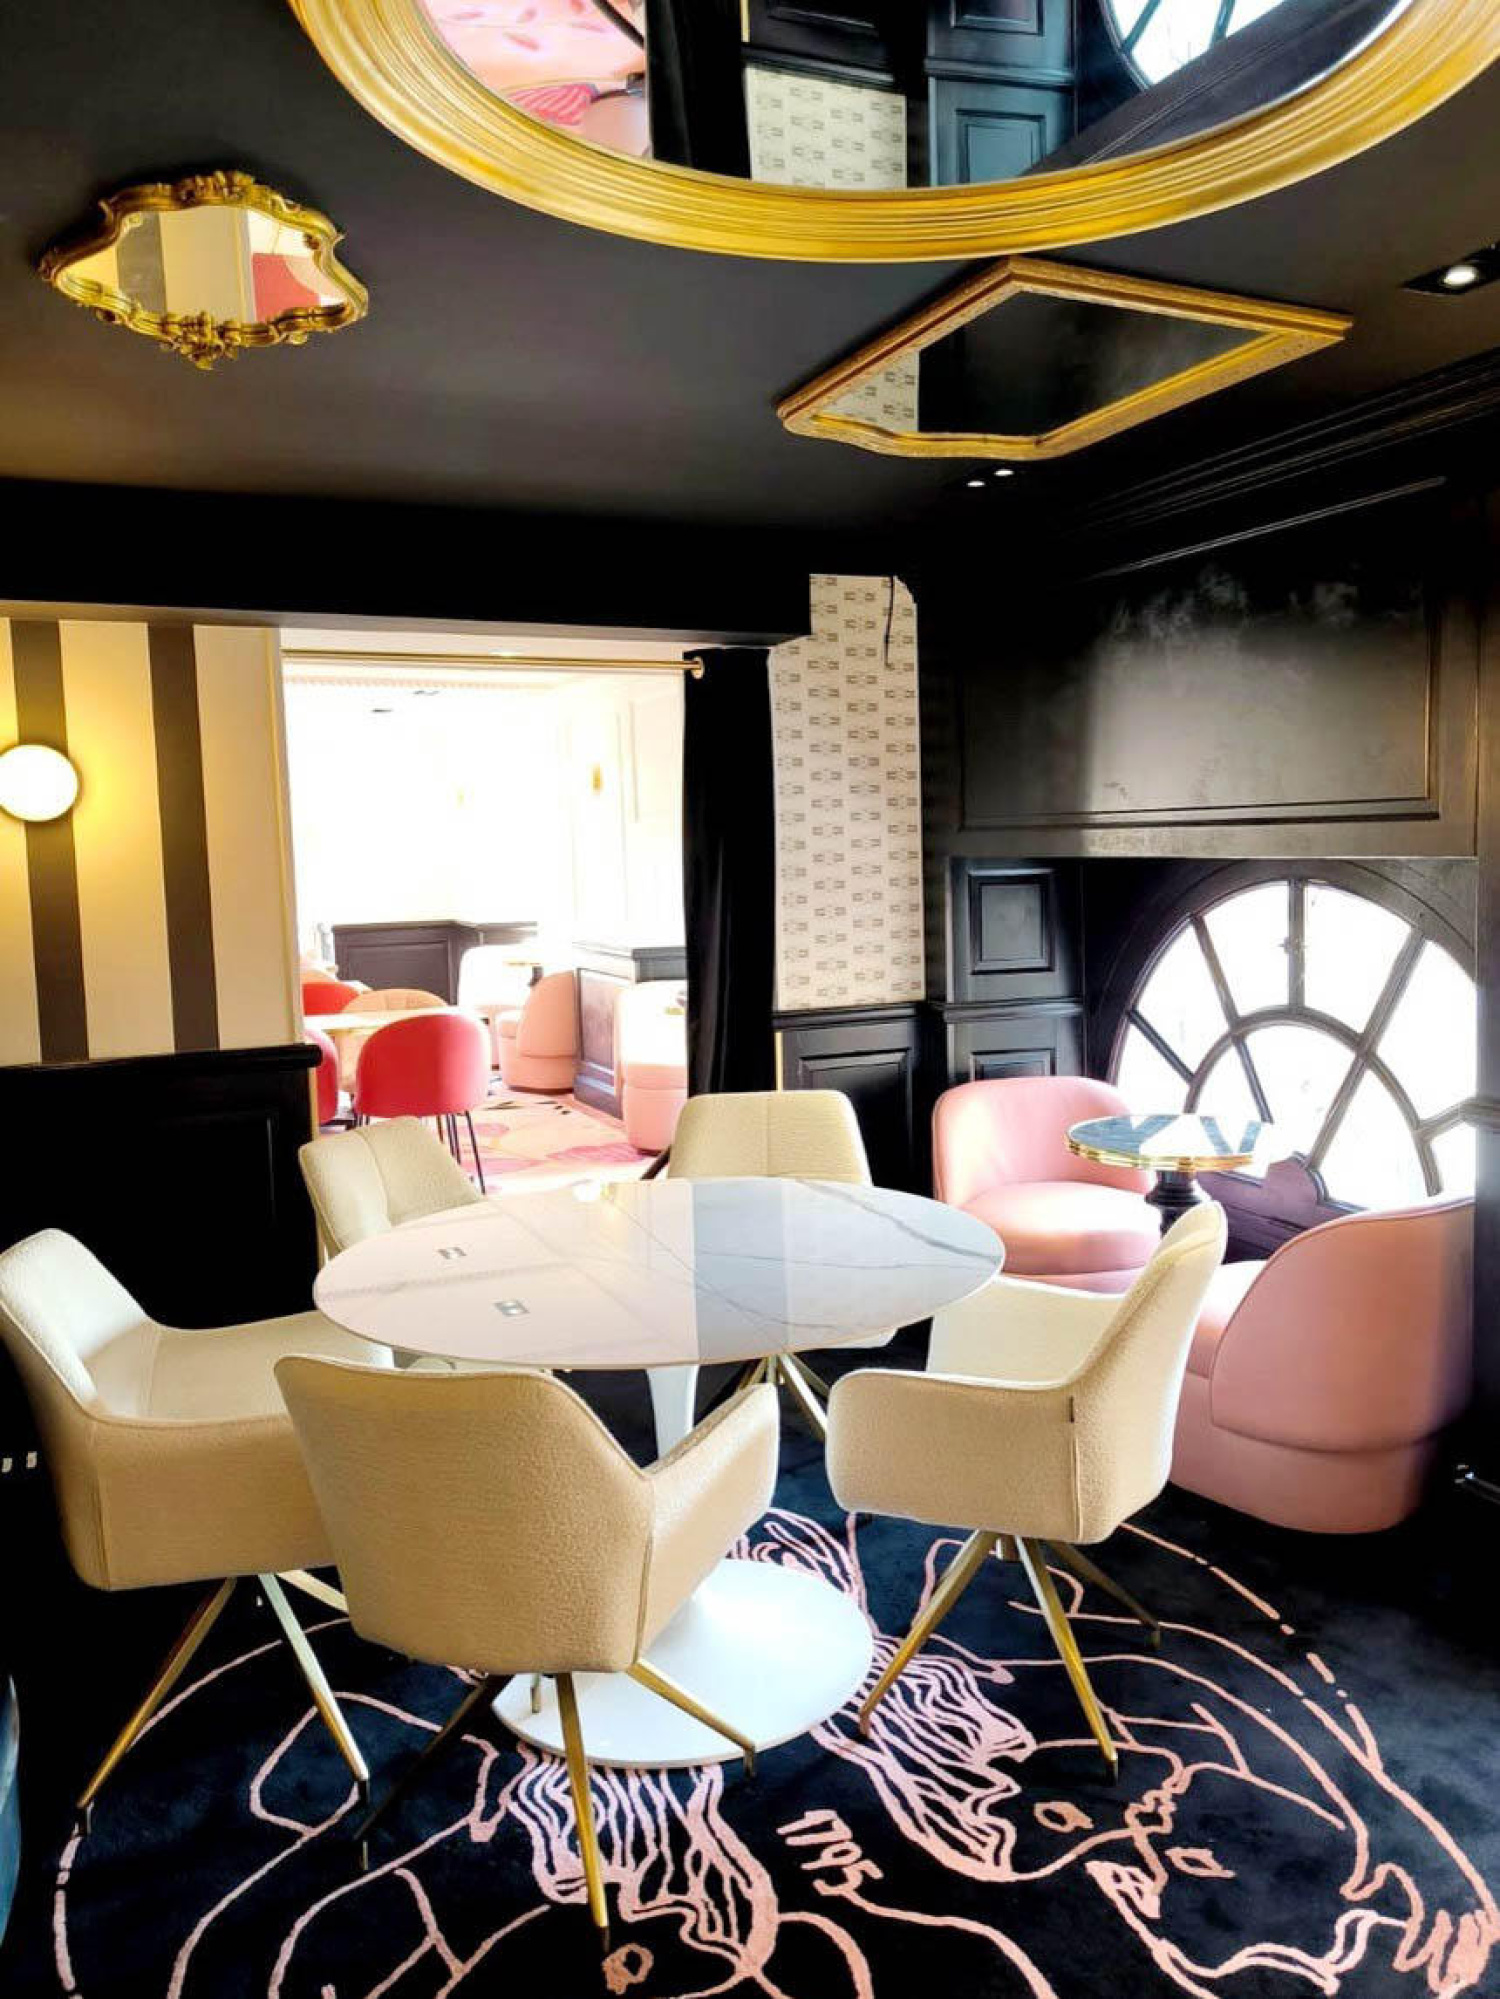 RESTAURANTE LE GRAND CAFÉ FOY EN NANCY - IBFOR - Your design shop